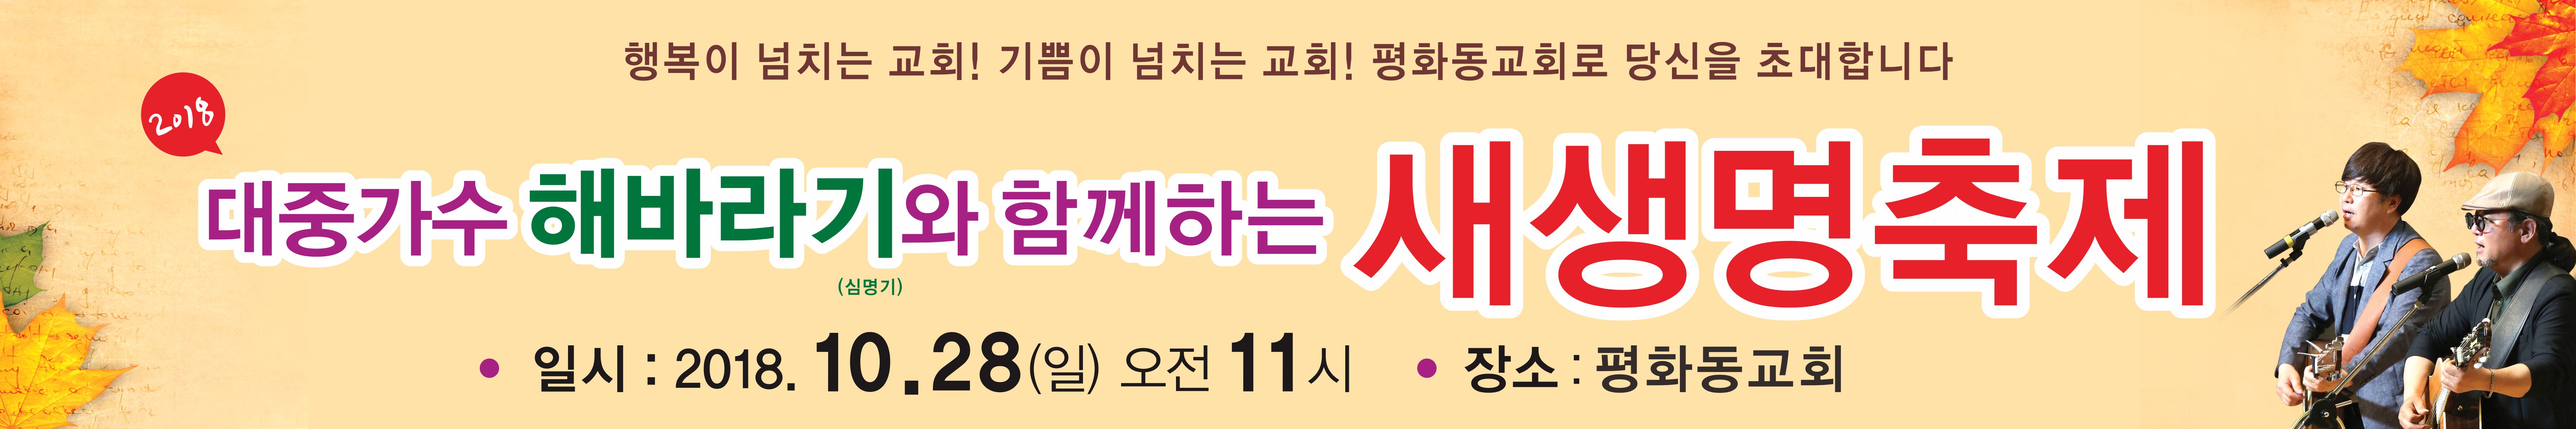 평화동교회 현수막(600-100)1.jpg